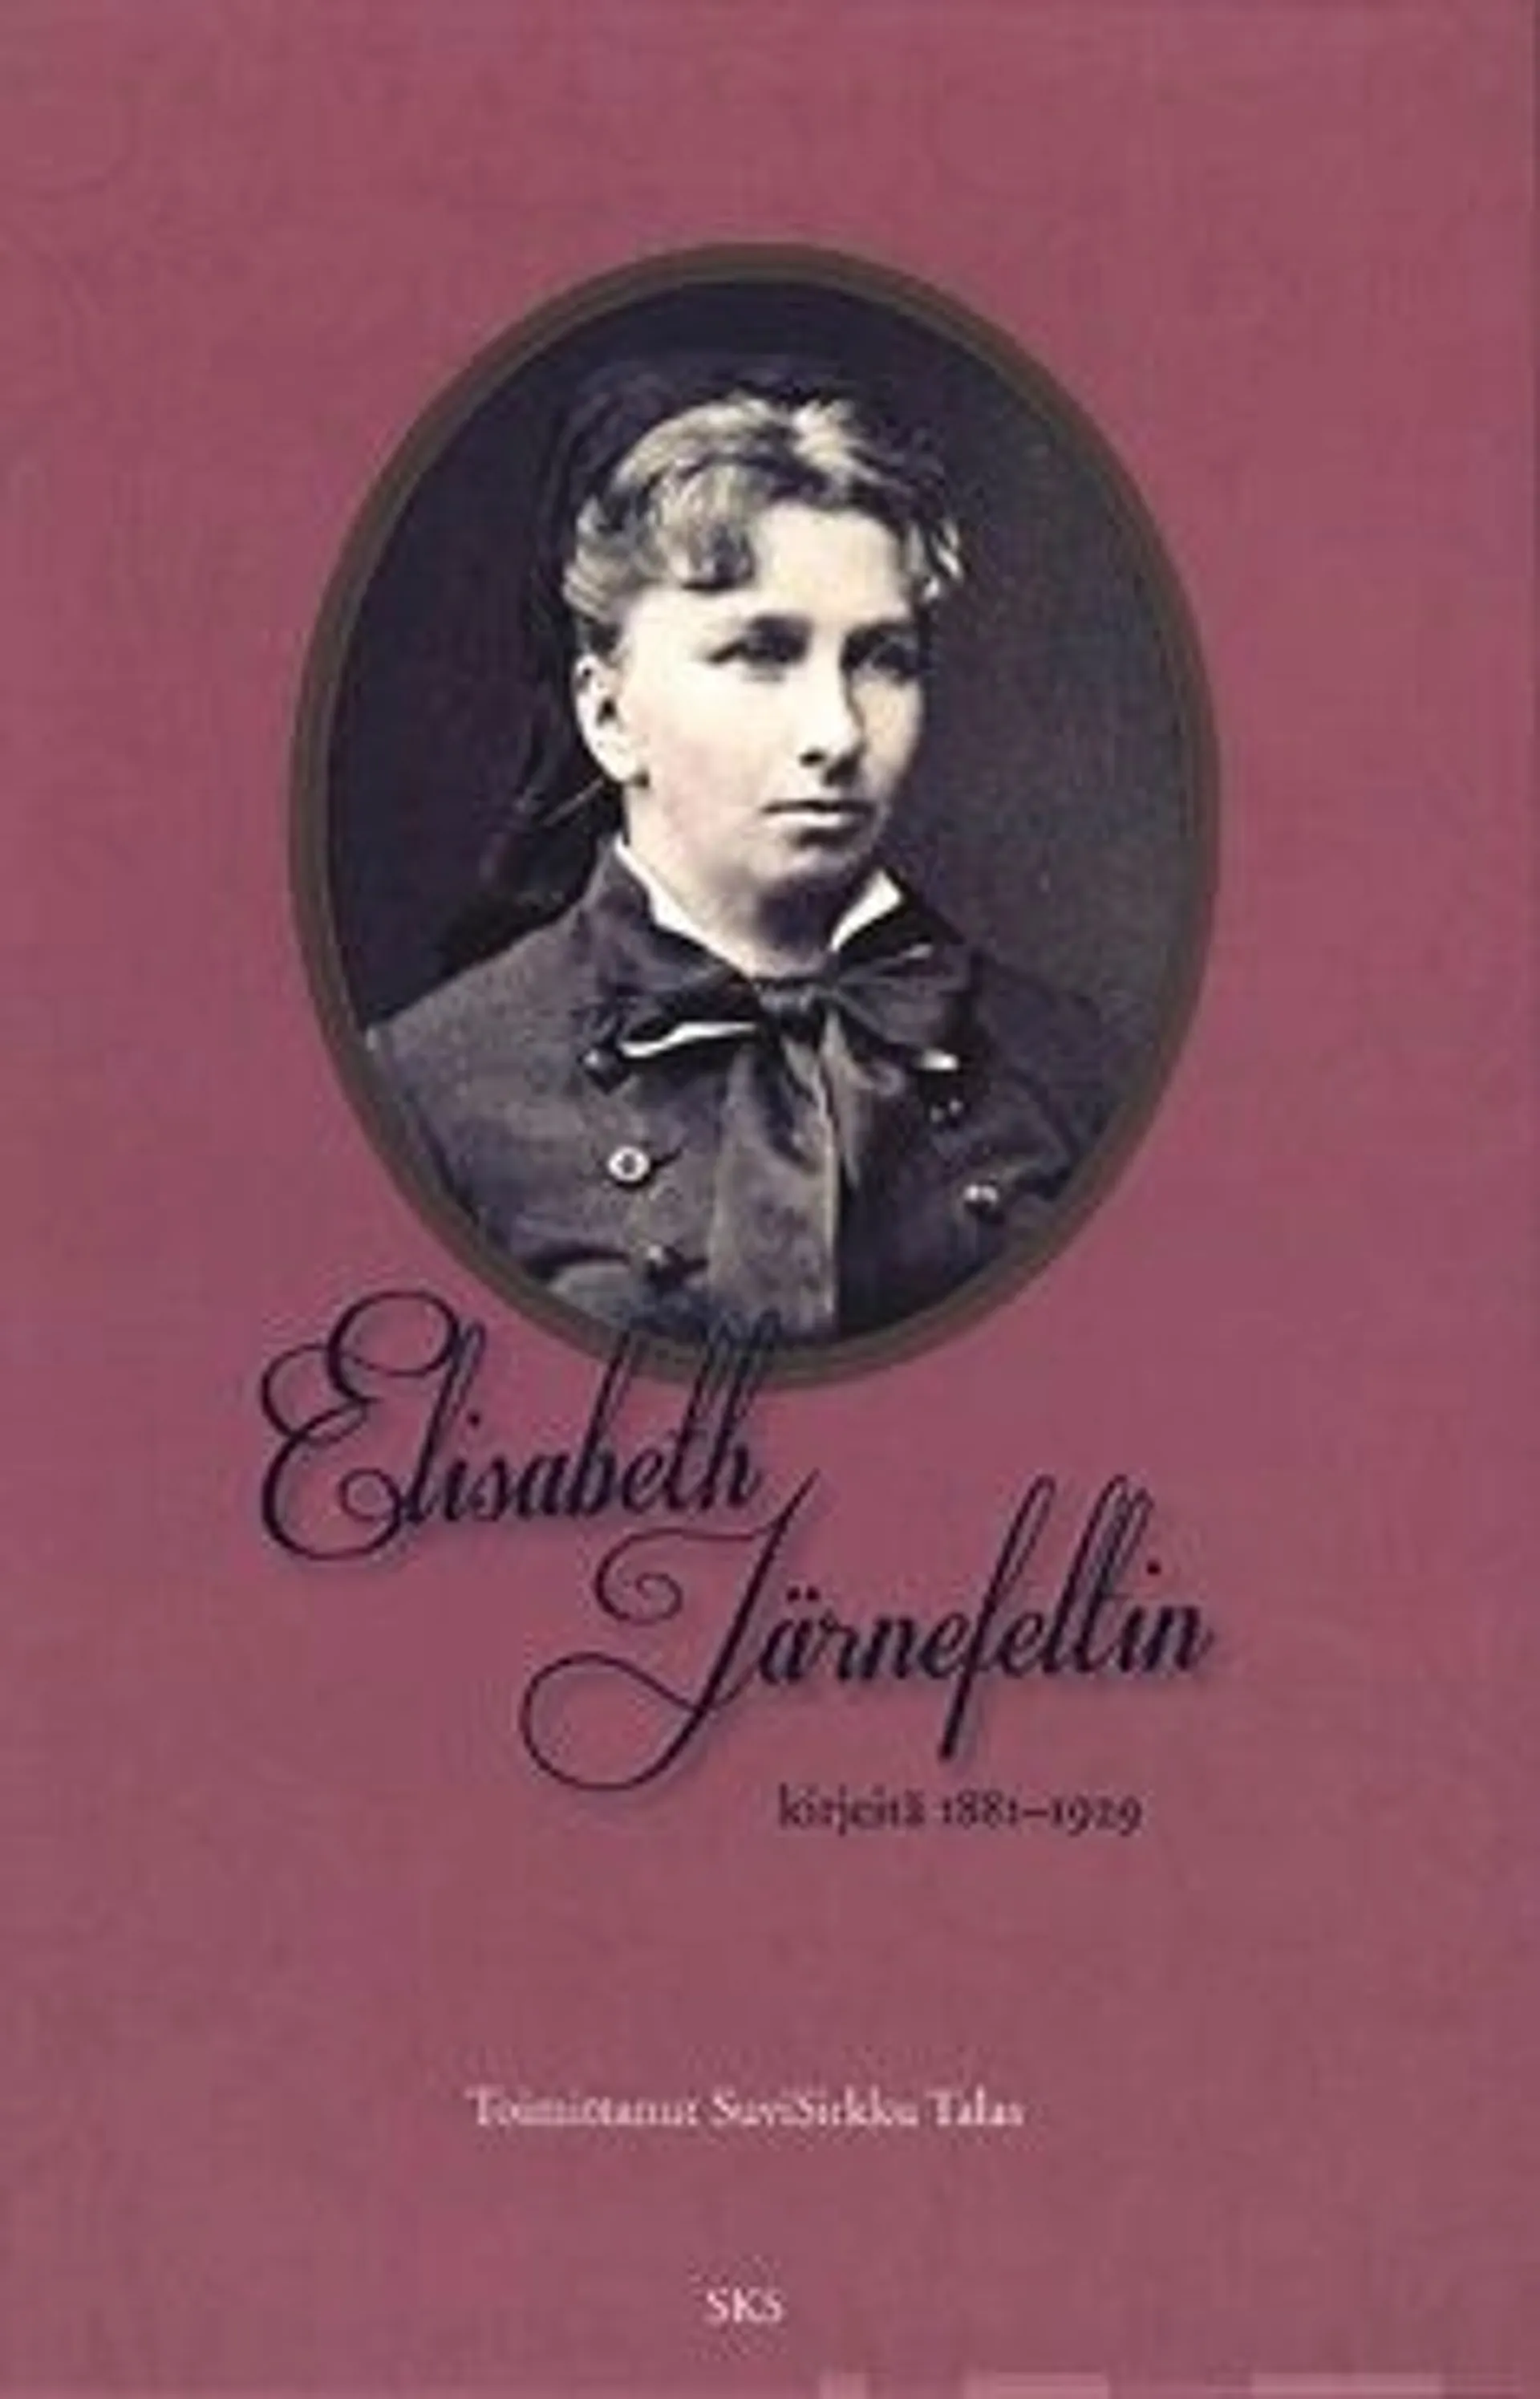 Elisabeth Järnefeltin kirjeitä 1881-1929